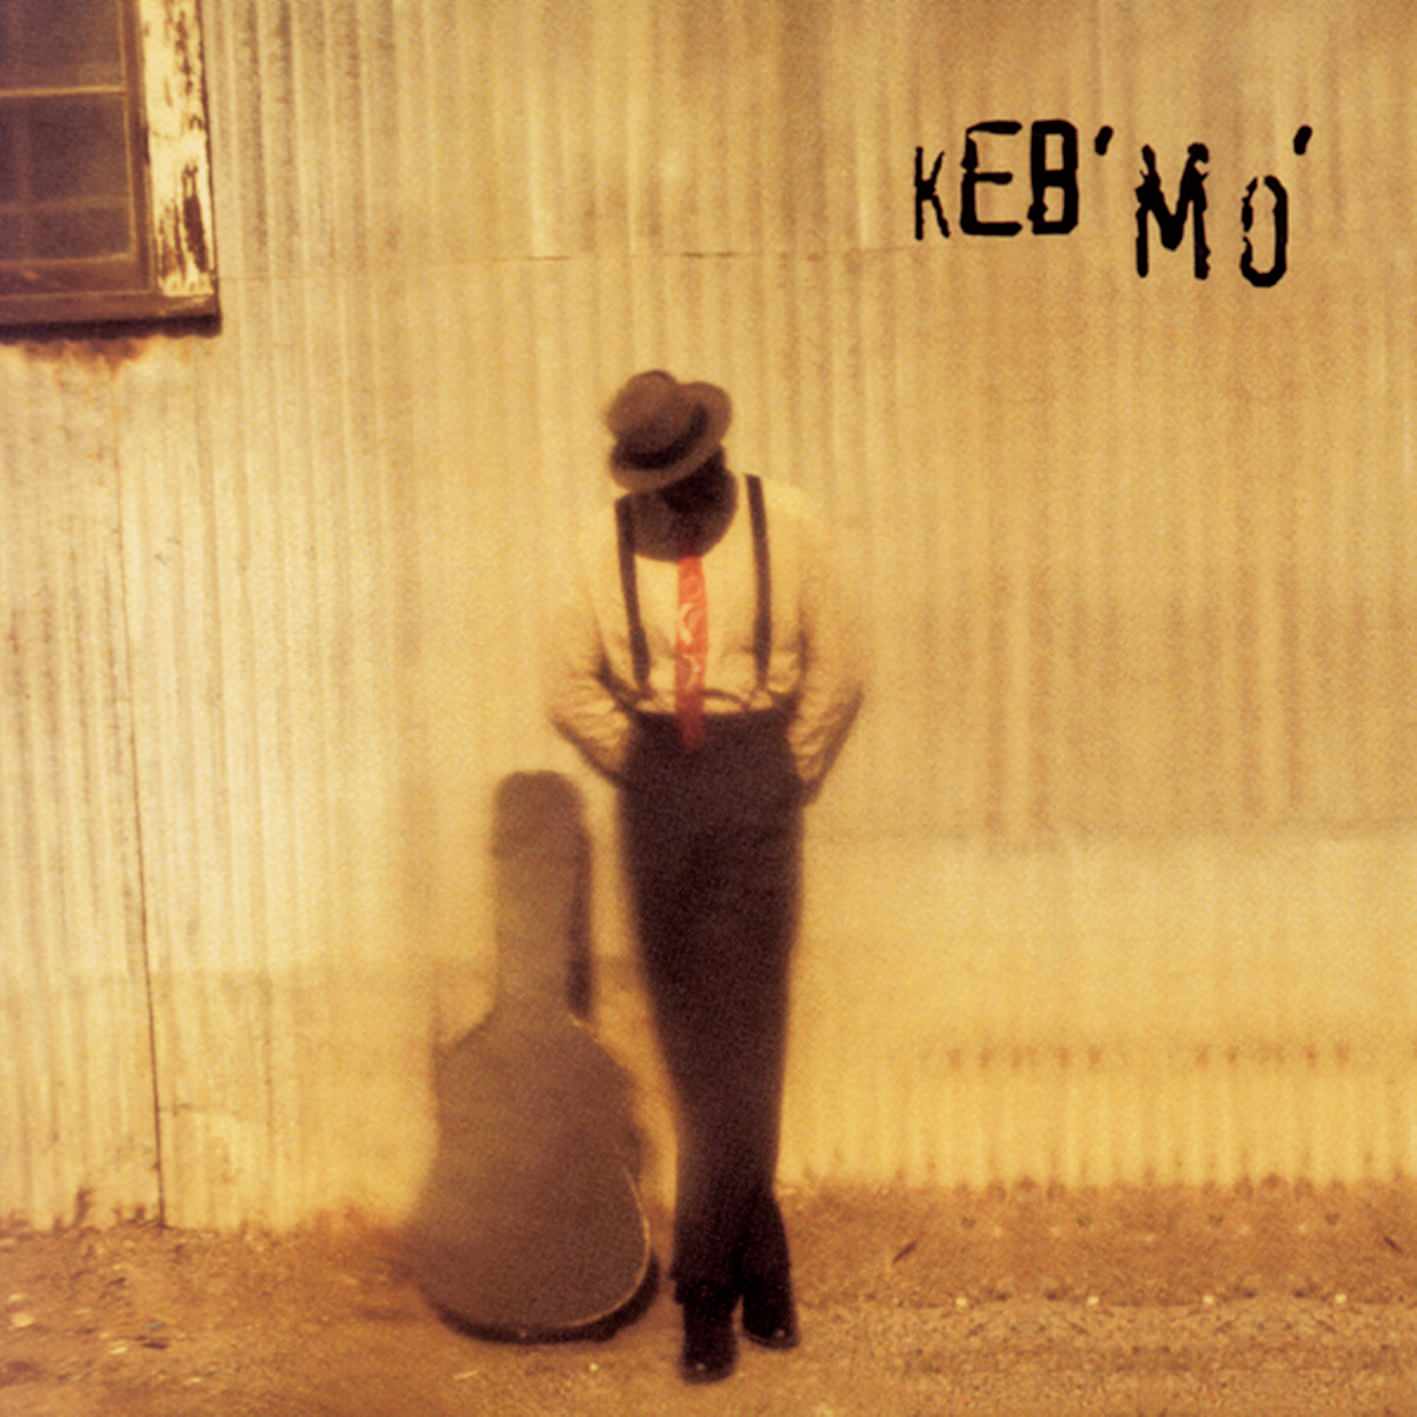 Keb’ Mo’ - Keb’ Mo’ (1994/2017) [HDTracks FLAC 24bit/192kHz]